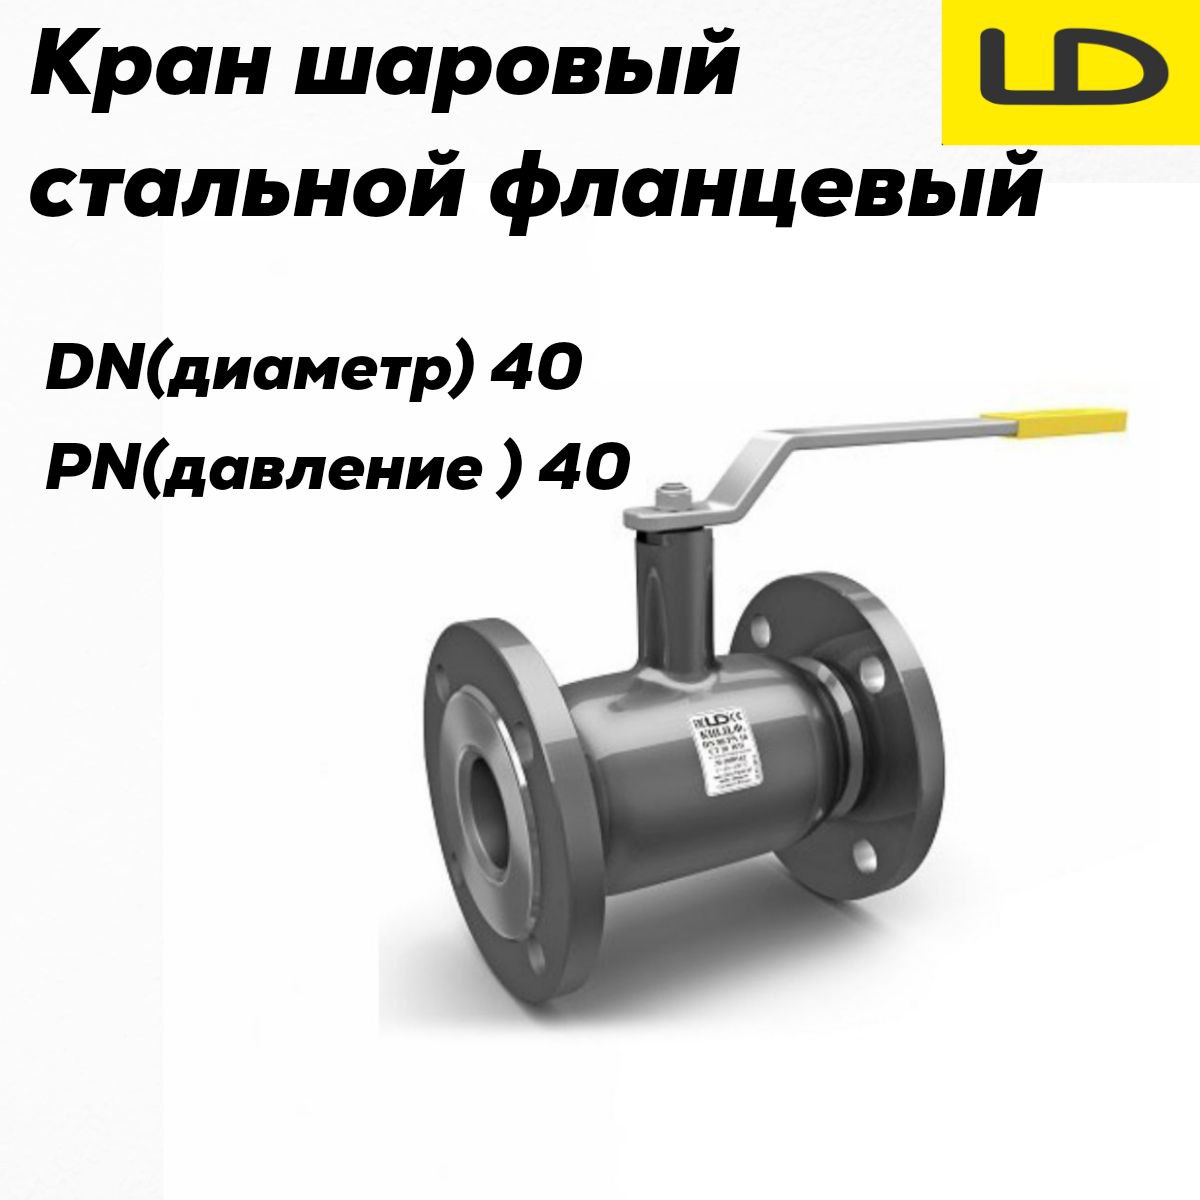 Кран шаровой стальной фланцевый КШЦФ DN 40 PN40 стандарт